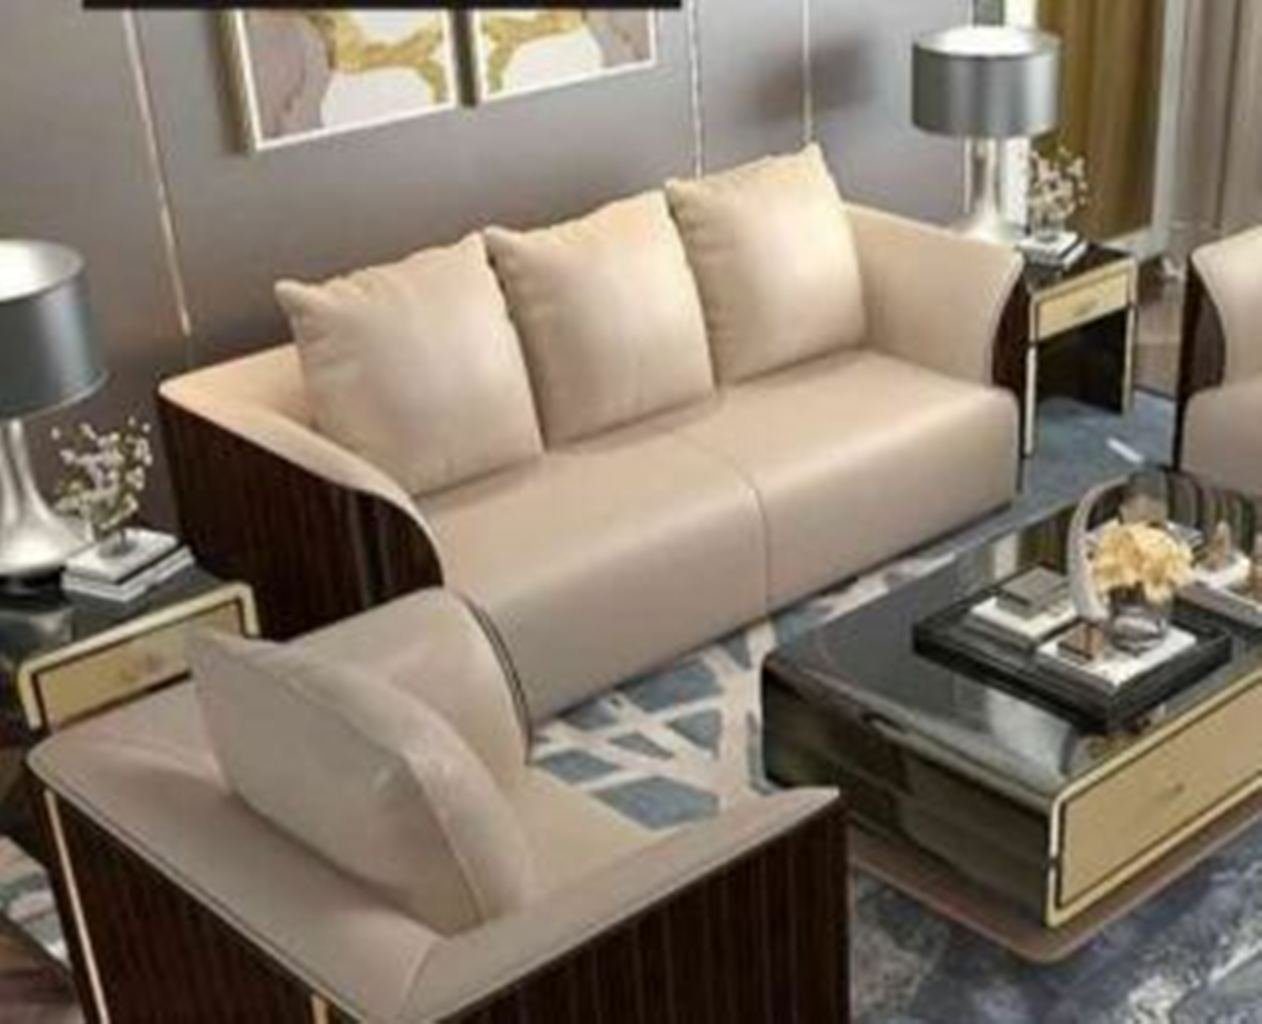 JVmoebel 3-Sitzer Beiger moderner 3-Sitzer Luxus Couch edles Design Neu, Made in Europe